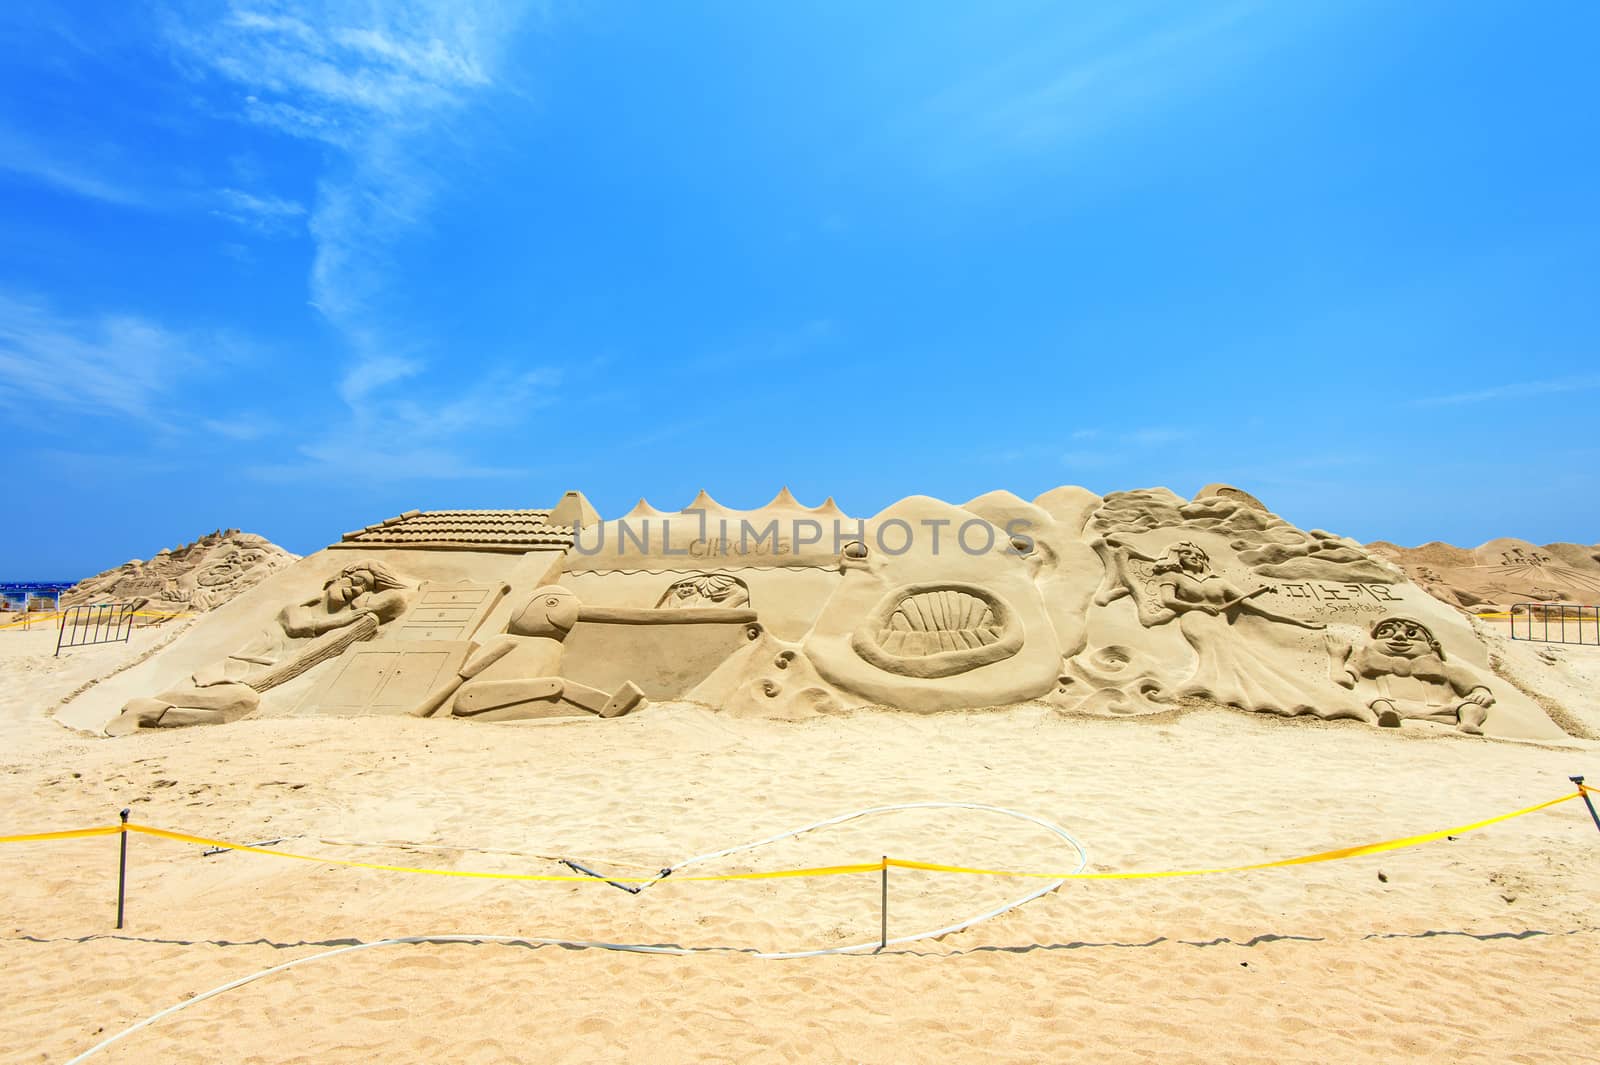 BUSAN, SOUTH KOREA - JUNE 1: Sand sculptures at the Busan Sand Festival on June 1, 2015 in Busan, South Korea.